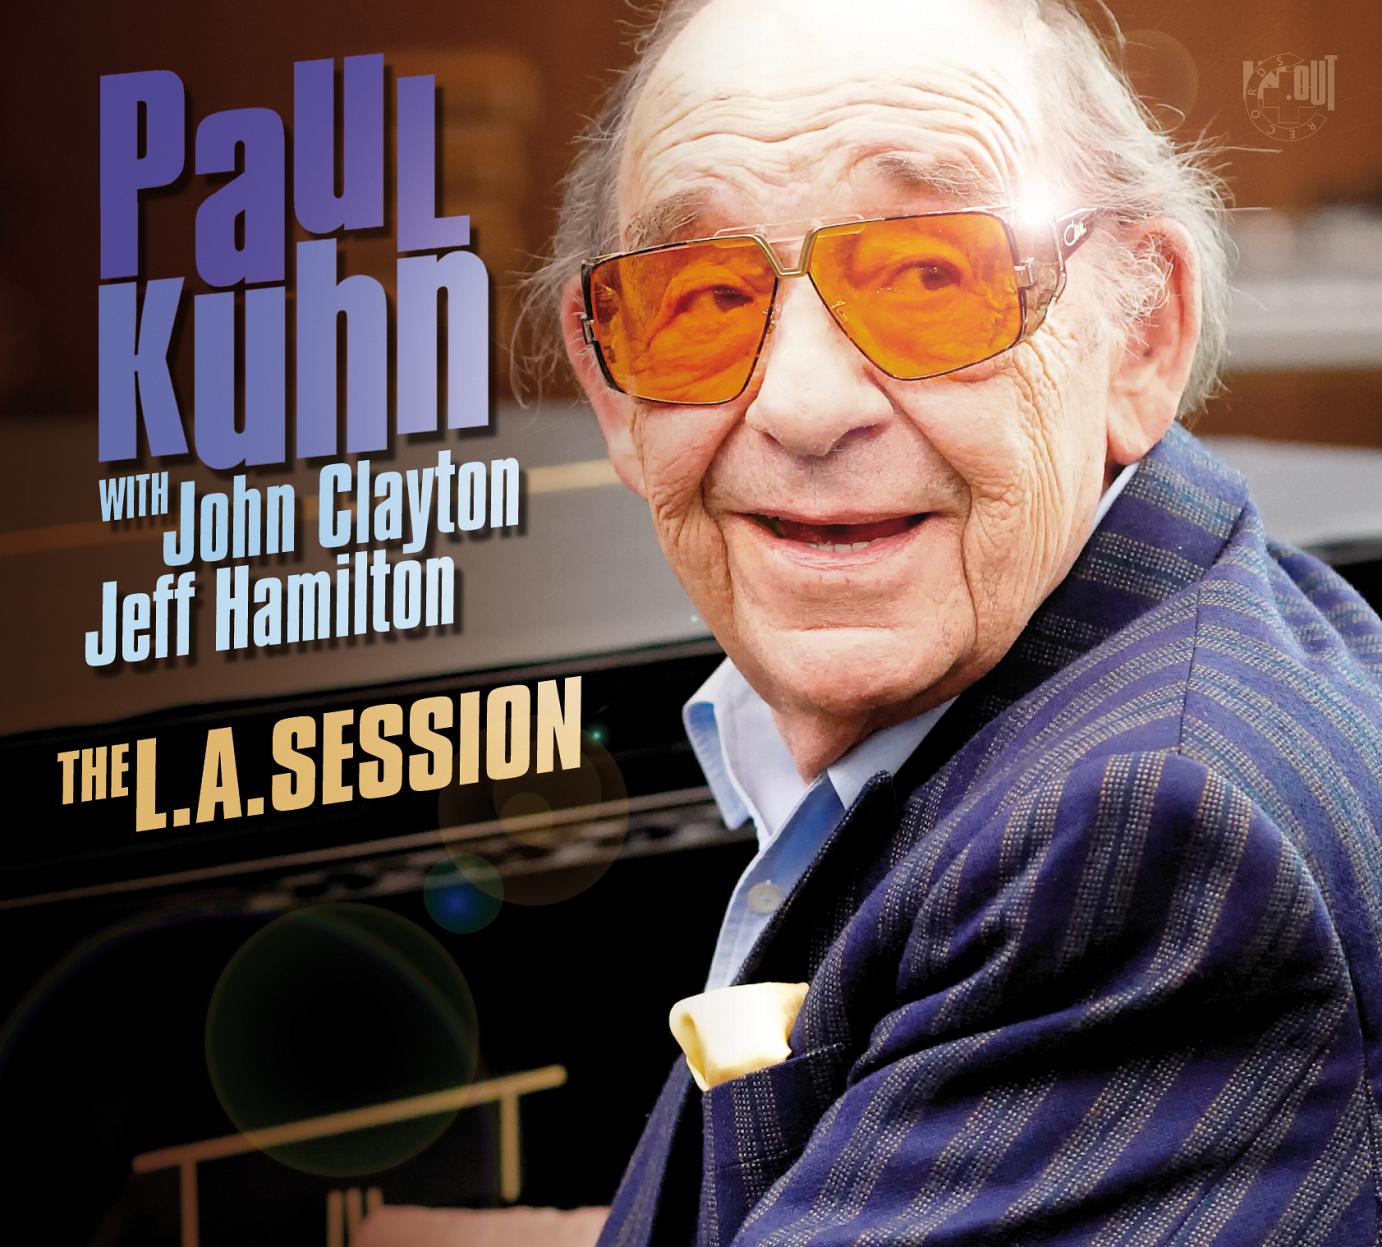 Der Mann am Klavier wurde 85: Paul Kuhn kehrt zum Jazz zurück und begeistert mit “The L.A. Session”